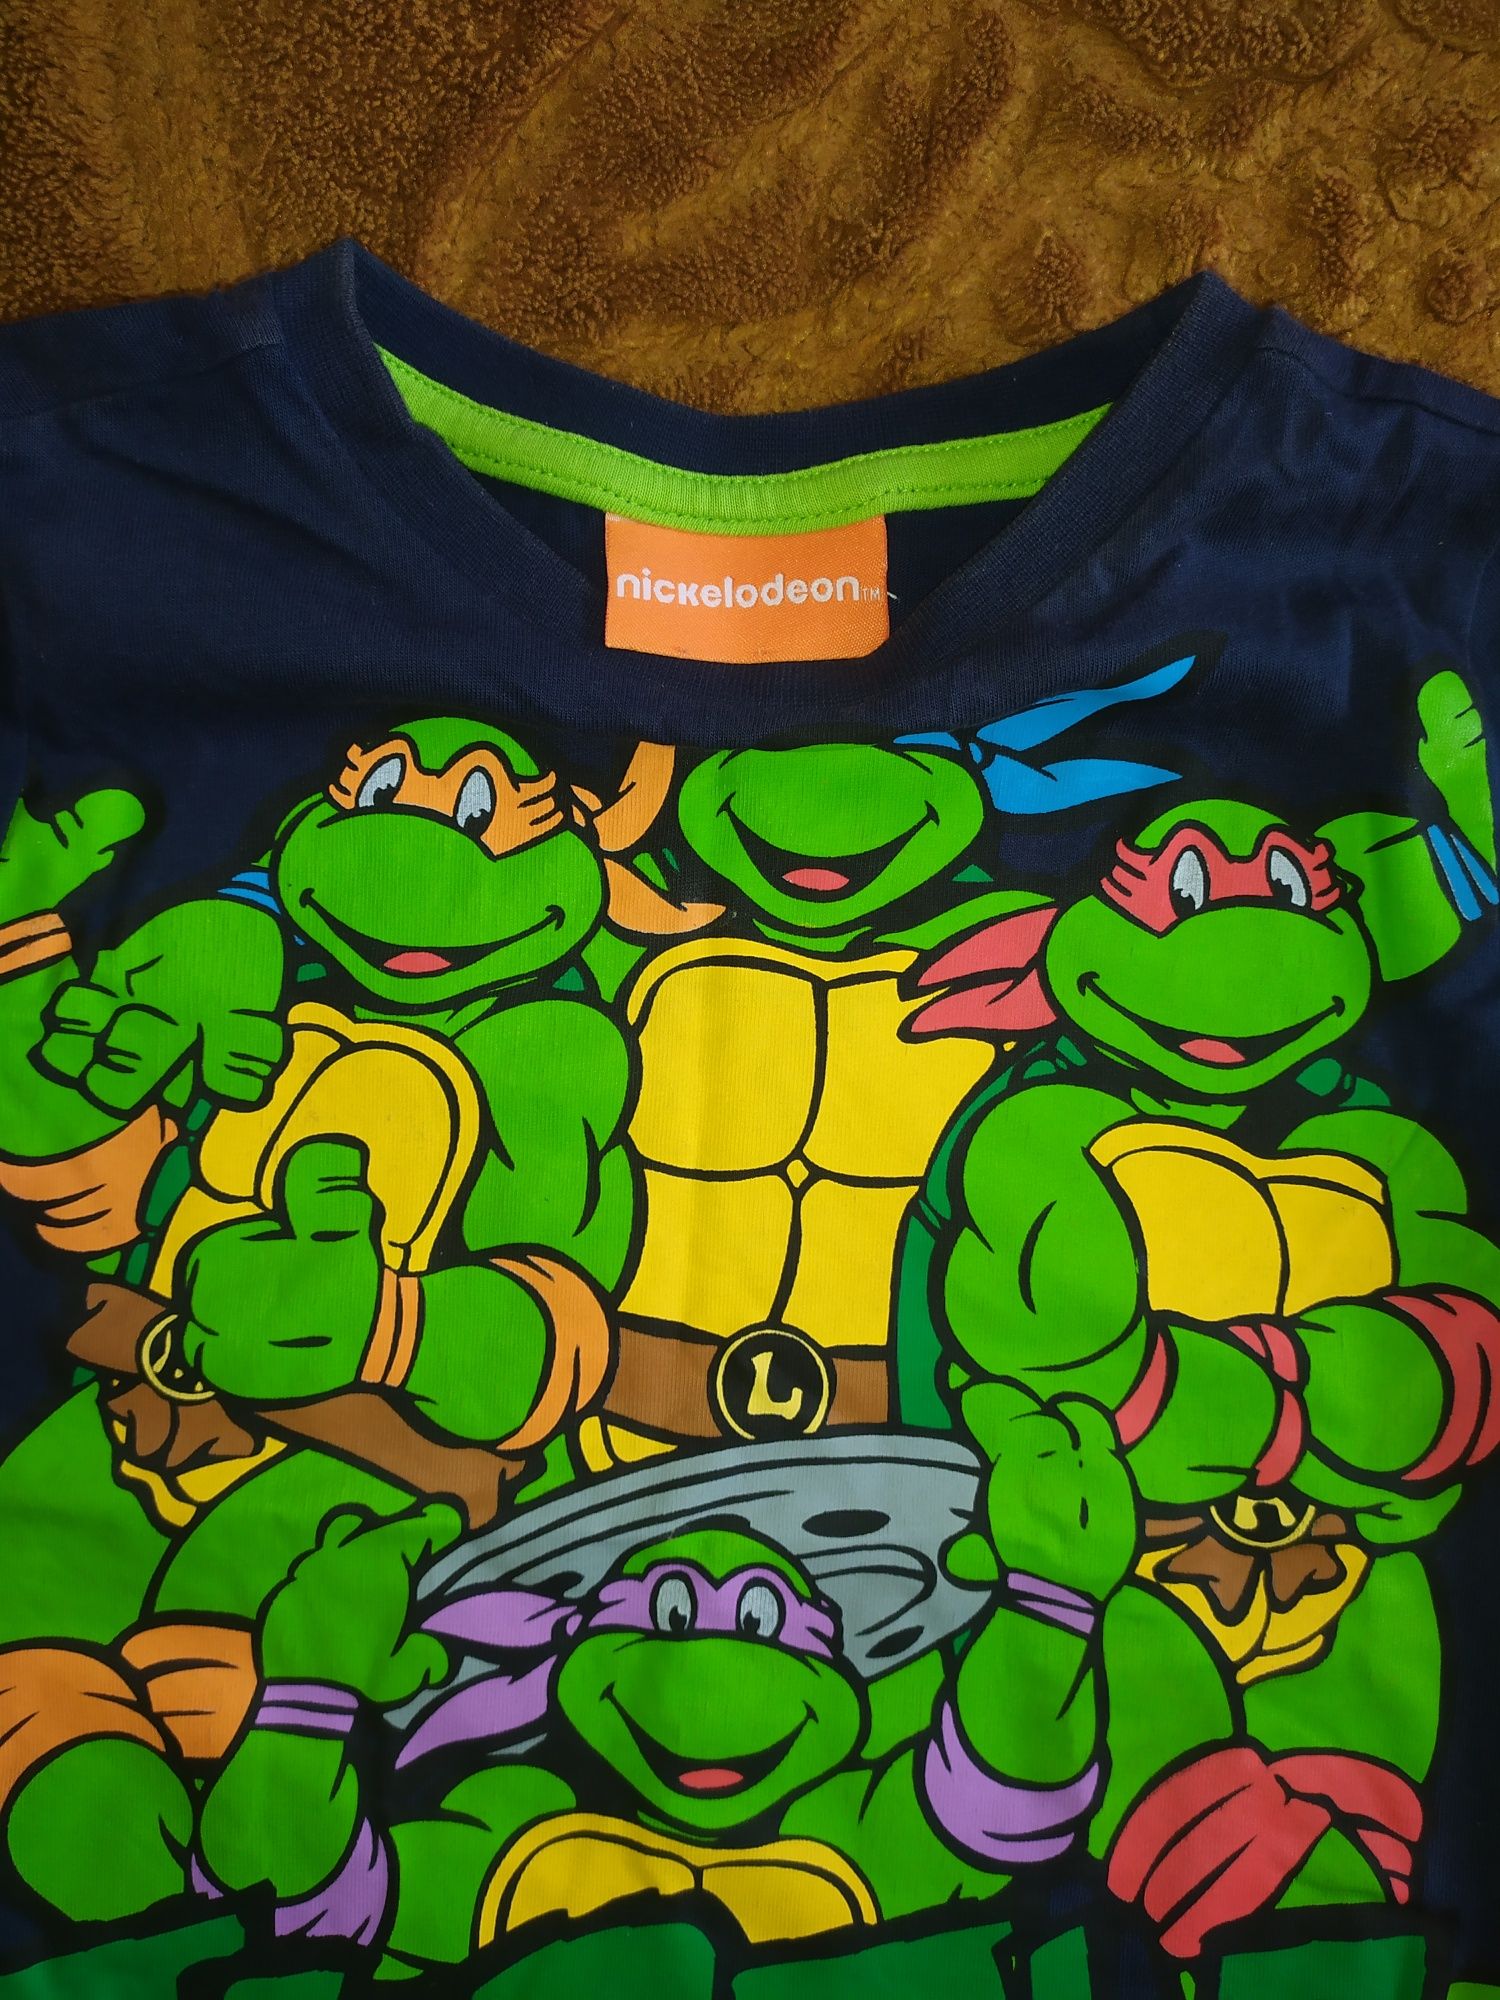 Bluzka z krótkim rękawem żółwie ninja dla chłopca 92